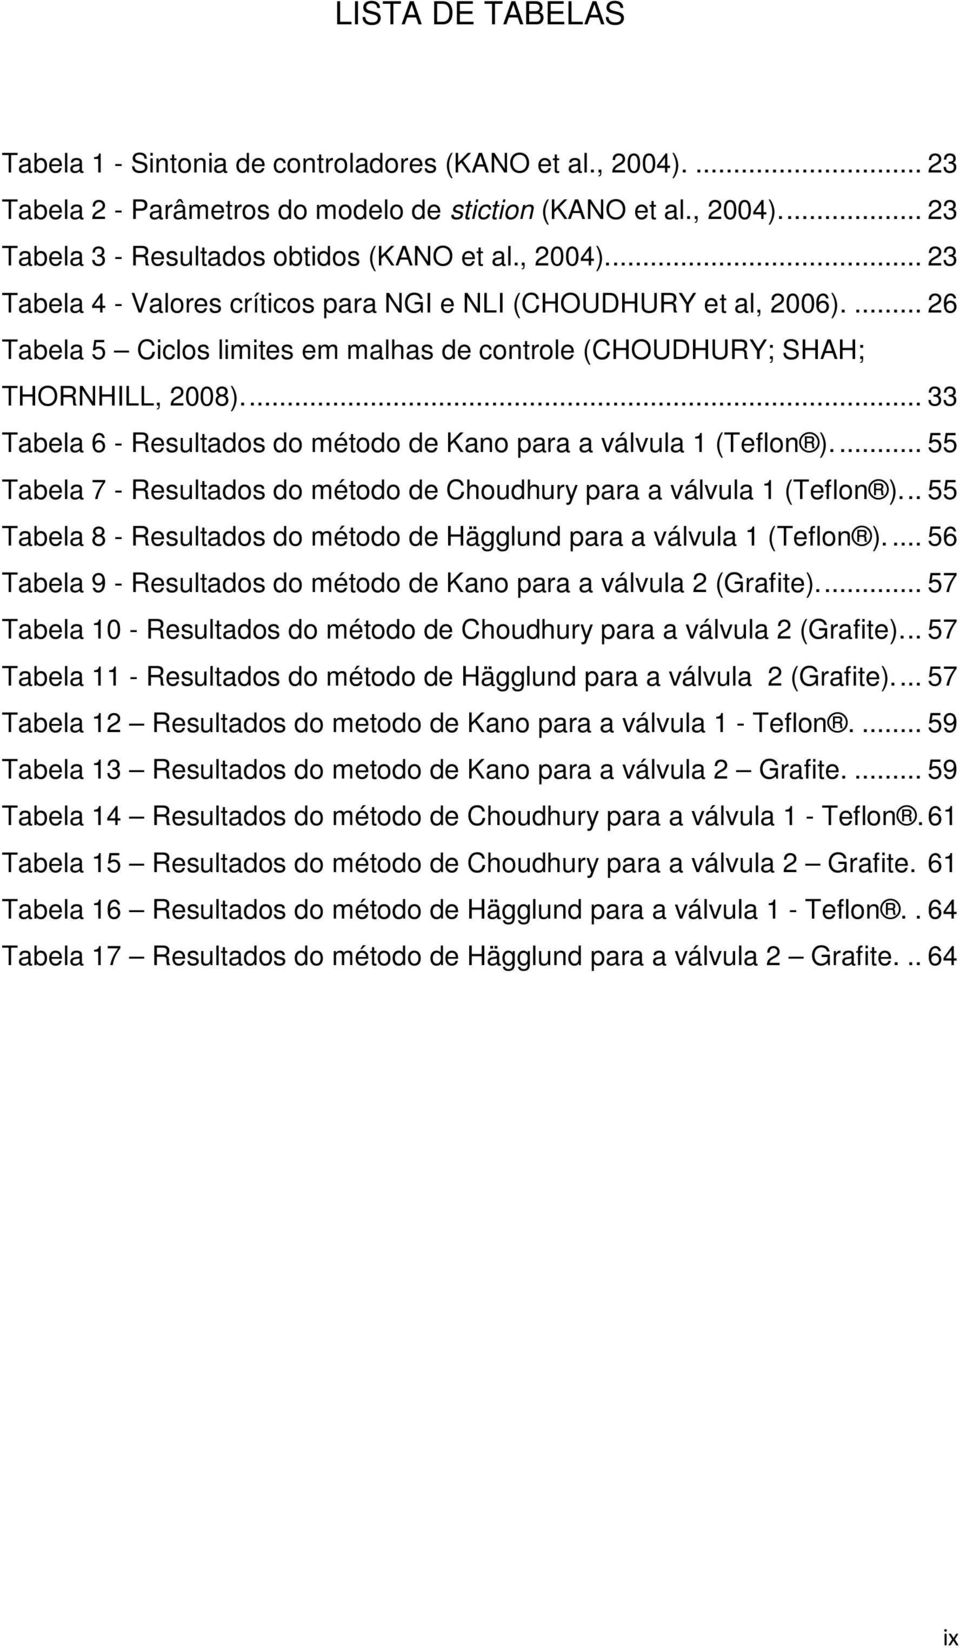 ... 55 Tabela 7 - Resultados do método de Choudhury para a válvula 1 (Telon )... 55 Tabela 8 - Resultados do método de Hägglund para a válvula 1 (Telon ).